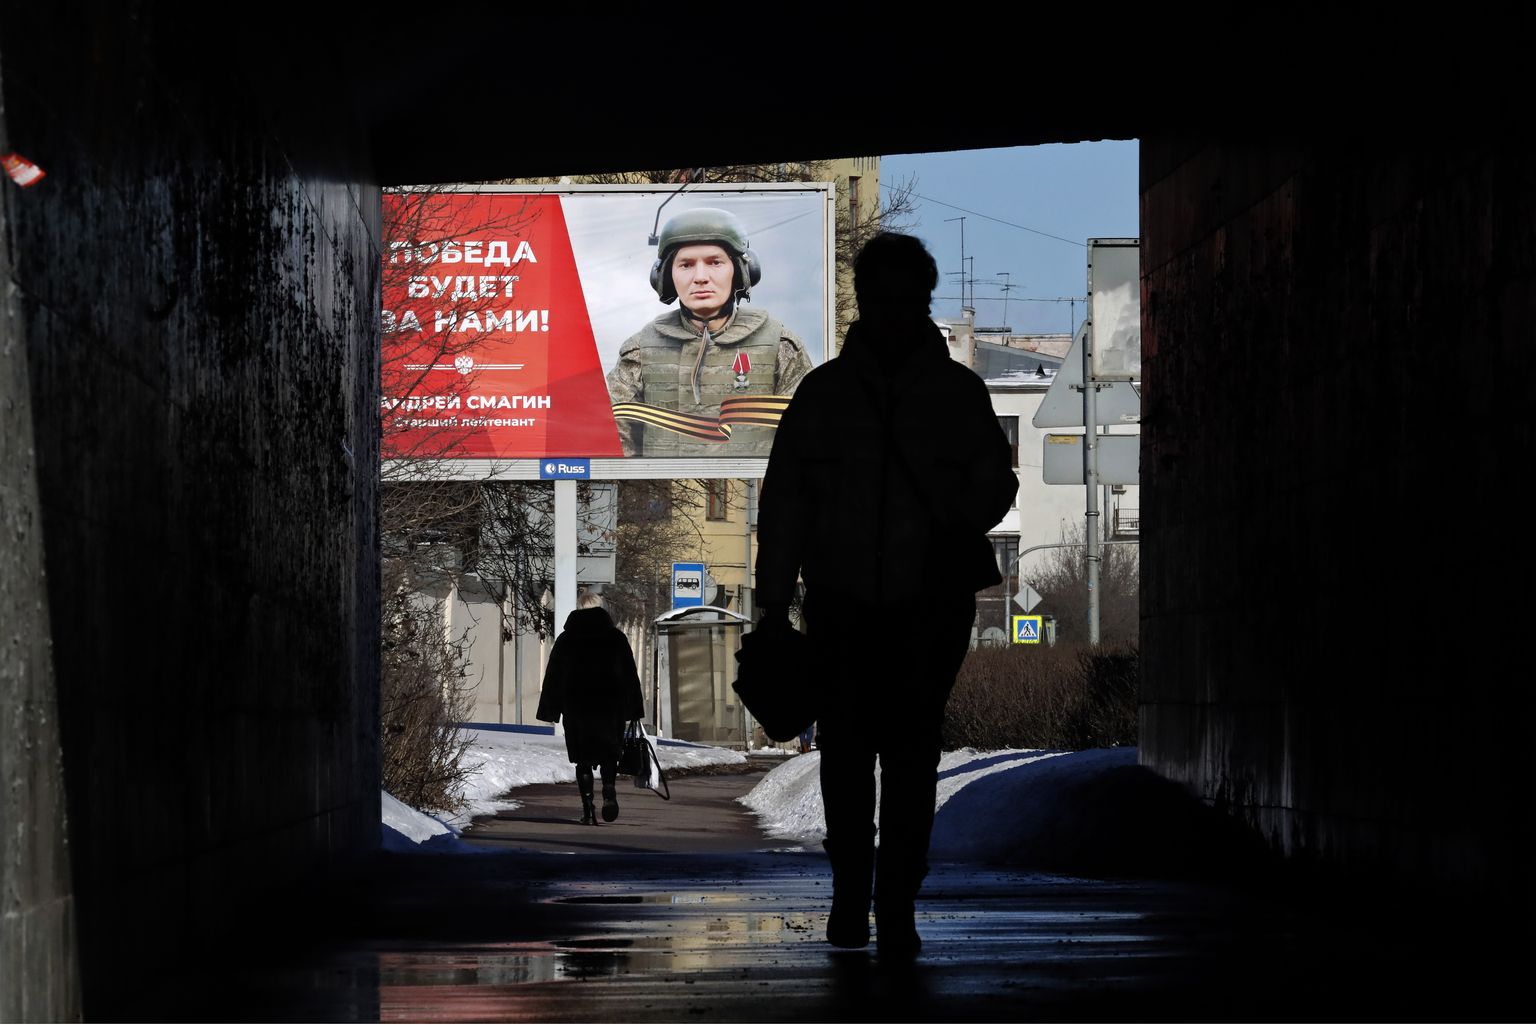 Kara plakāts Krievijā, Sanktpēterburgā.